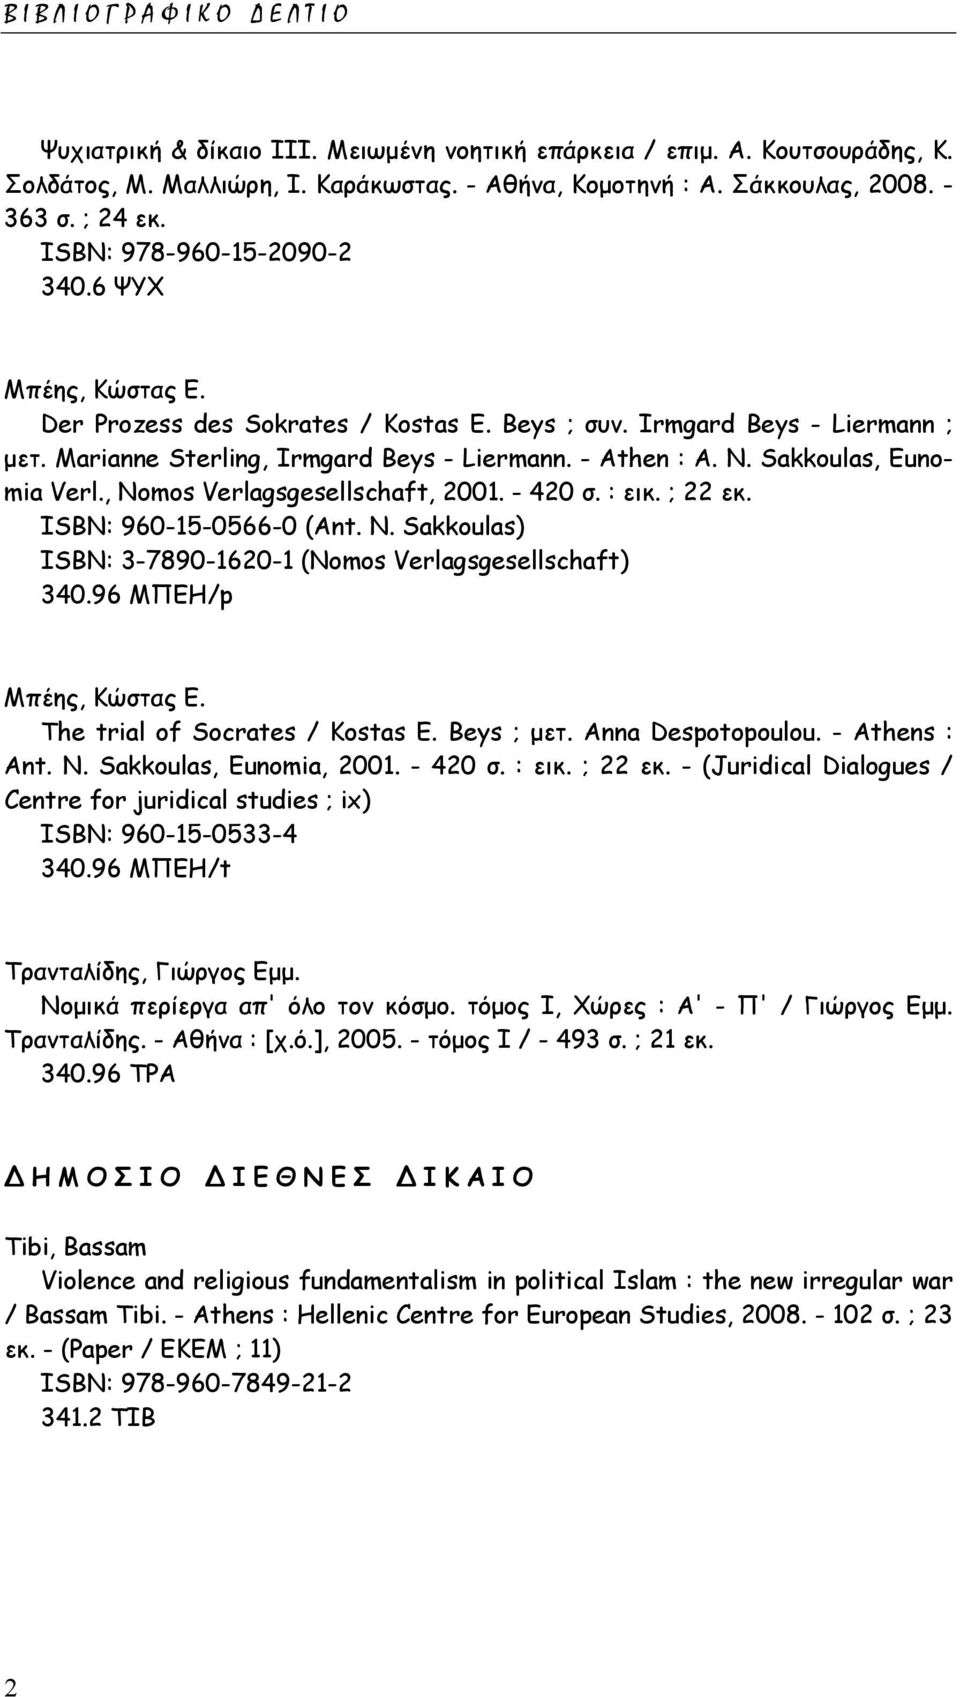 Sakkoulas, Eunomia Verl., Nomos Verlagsgesellschaft, 2001. - 420 σ. : εικ. ; 22 εκ. ISΒΝ: 960-15-0566-0 (Ant. N. Sakkoulas) ISΒΝ: 3-7890-1620-1 (Nomos Verlagsgesellschaft) 340.